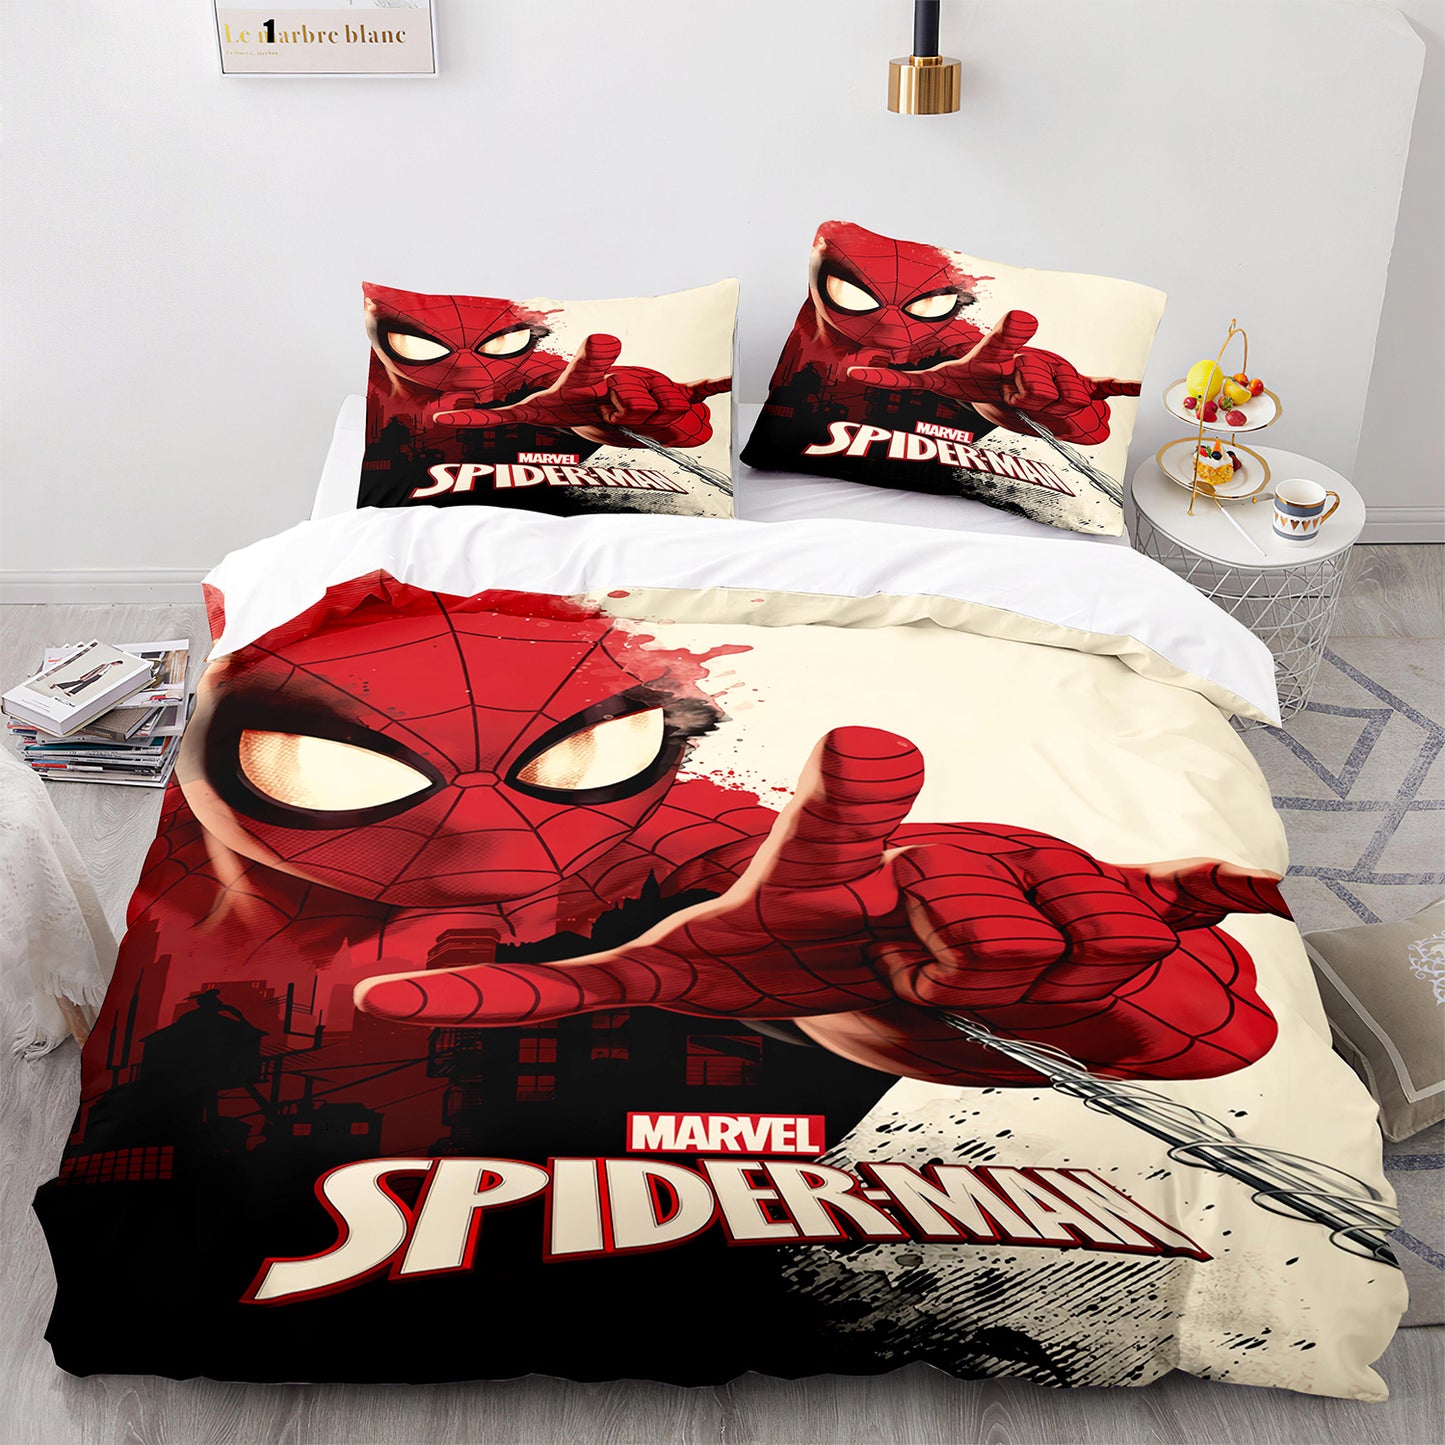 Marvel Spider-man Comforter Set